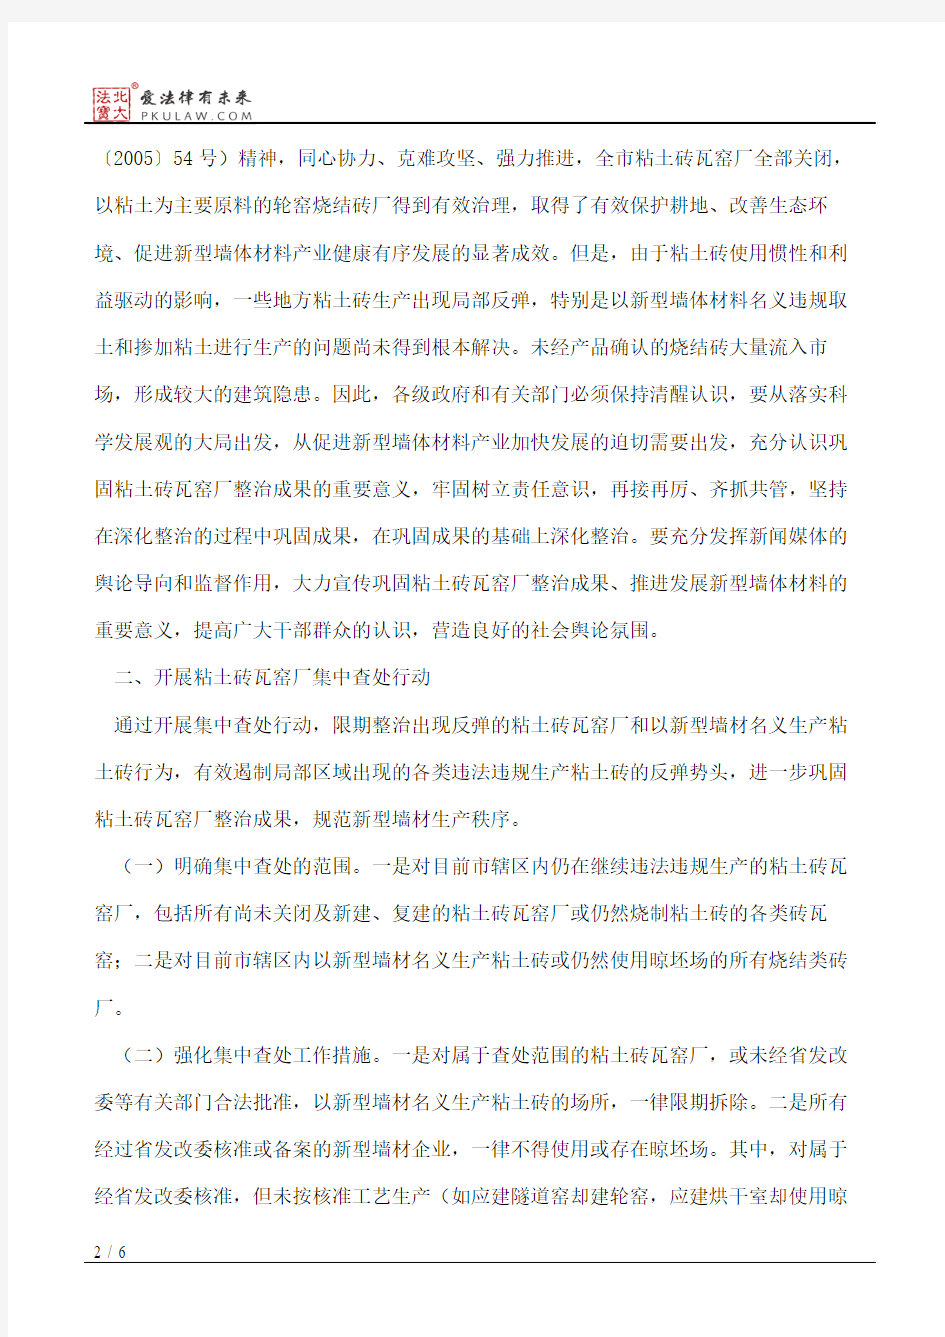 许昌市人民政府办公室关于切实巩固粘土砖瓦窑厂治理整顿成果的意见